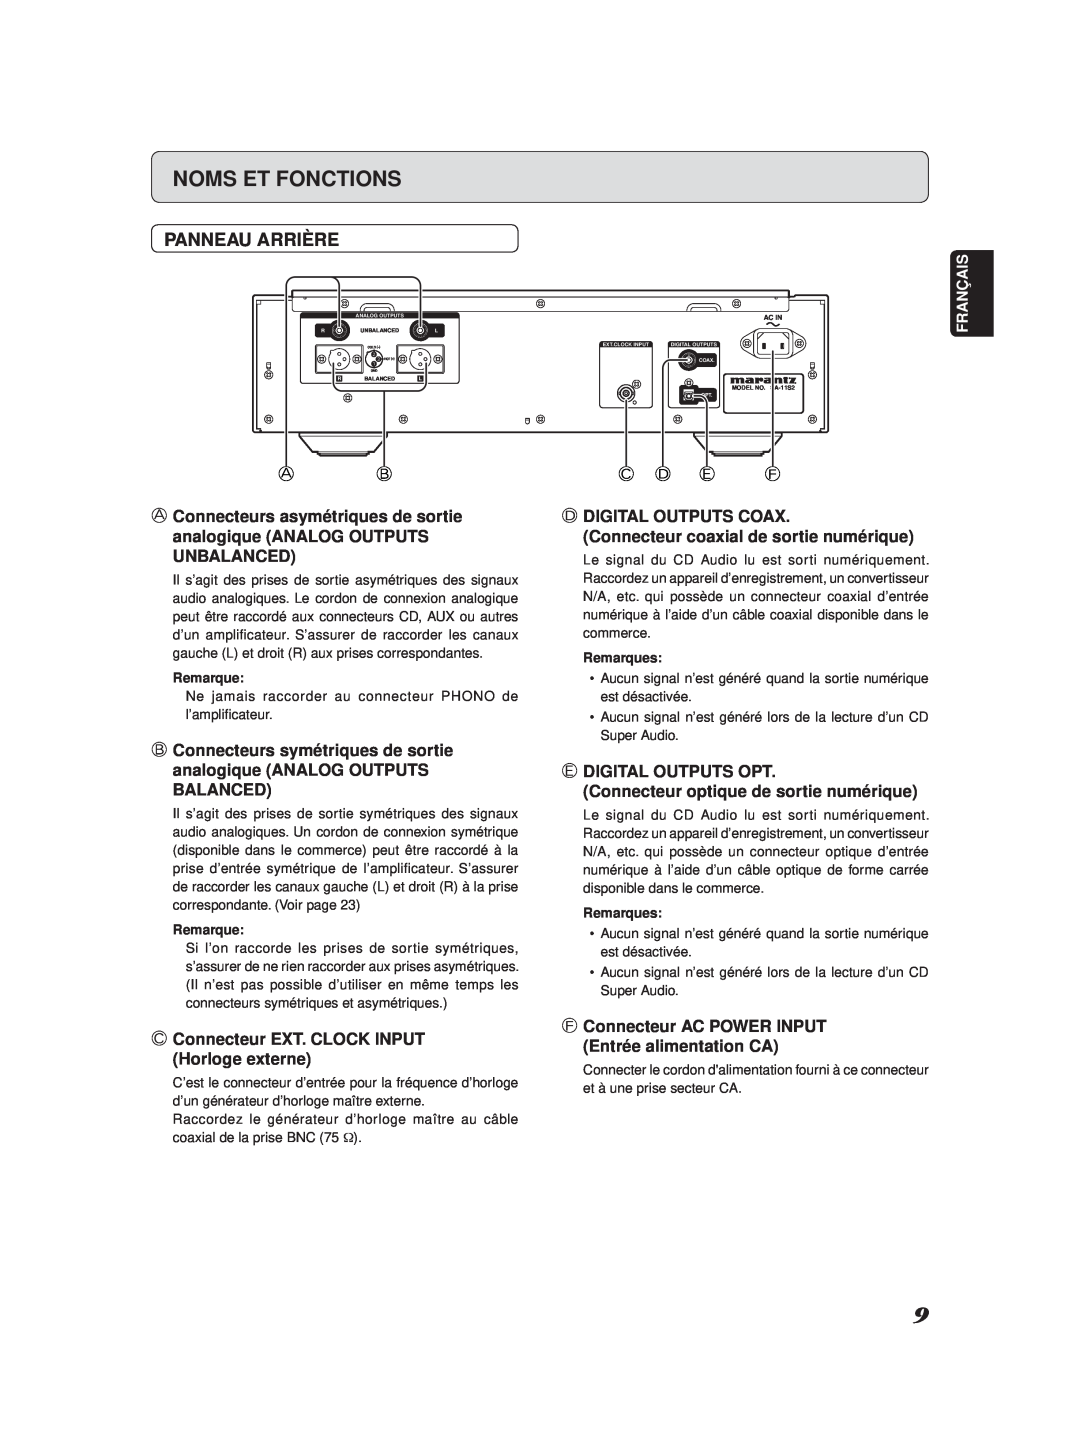 Marantz SA-11S2 manual Panneau Arrière, C D E F, Noms Et Fonctions, C Connecteur EXT. CLOCK INPUT Horloge externe, Français 